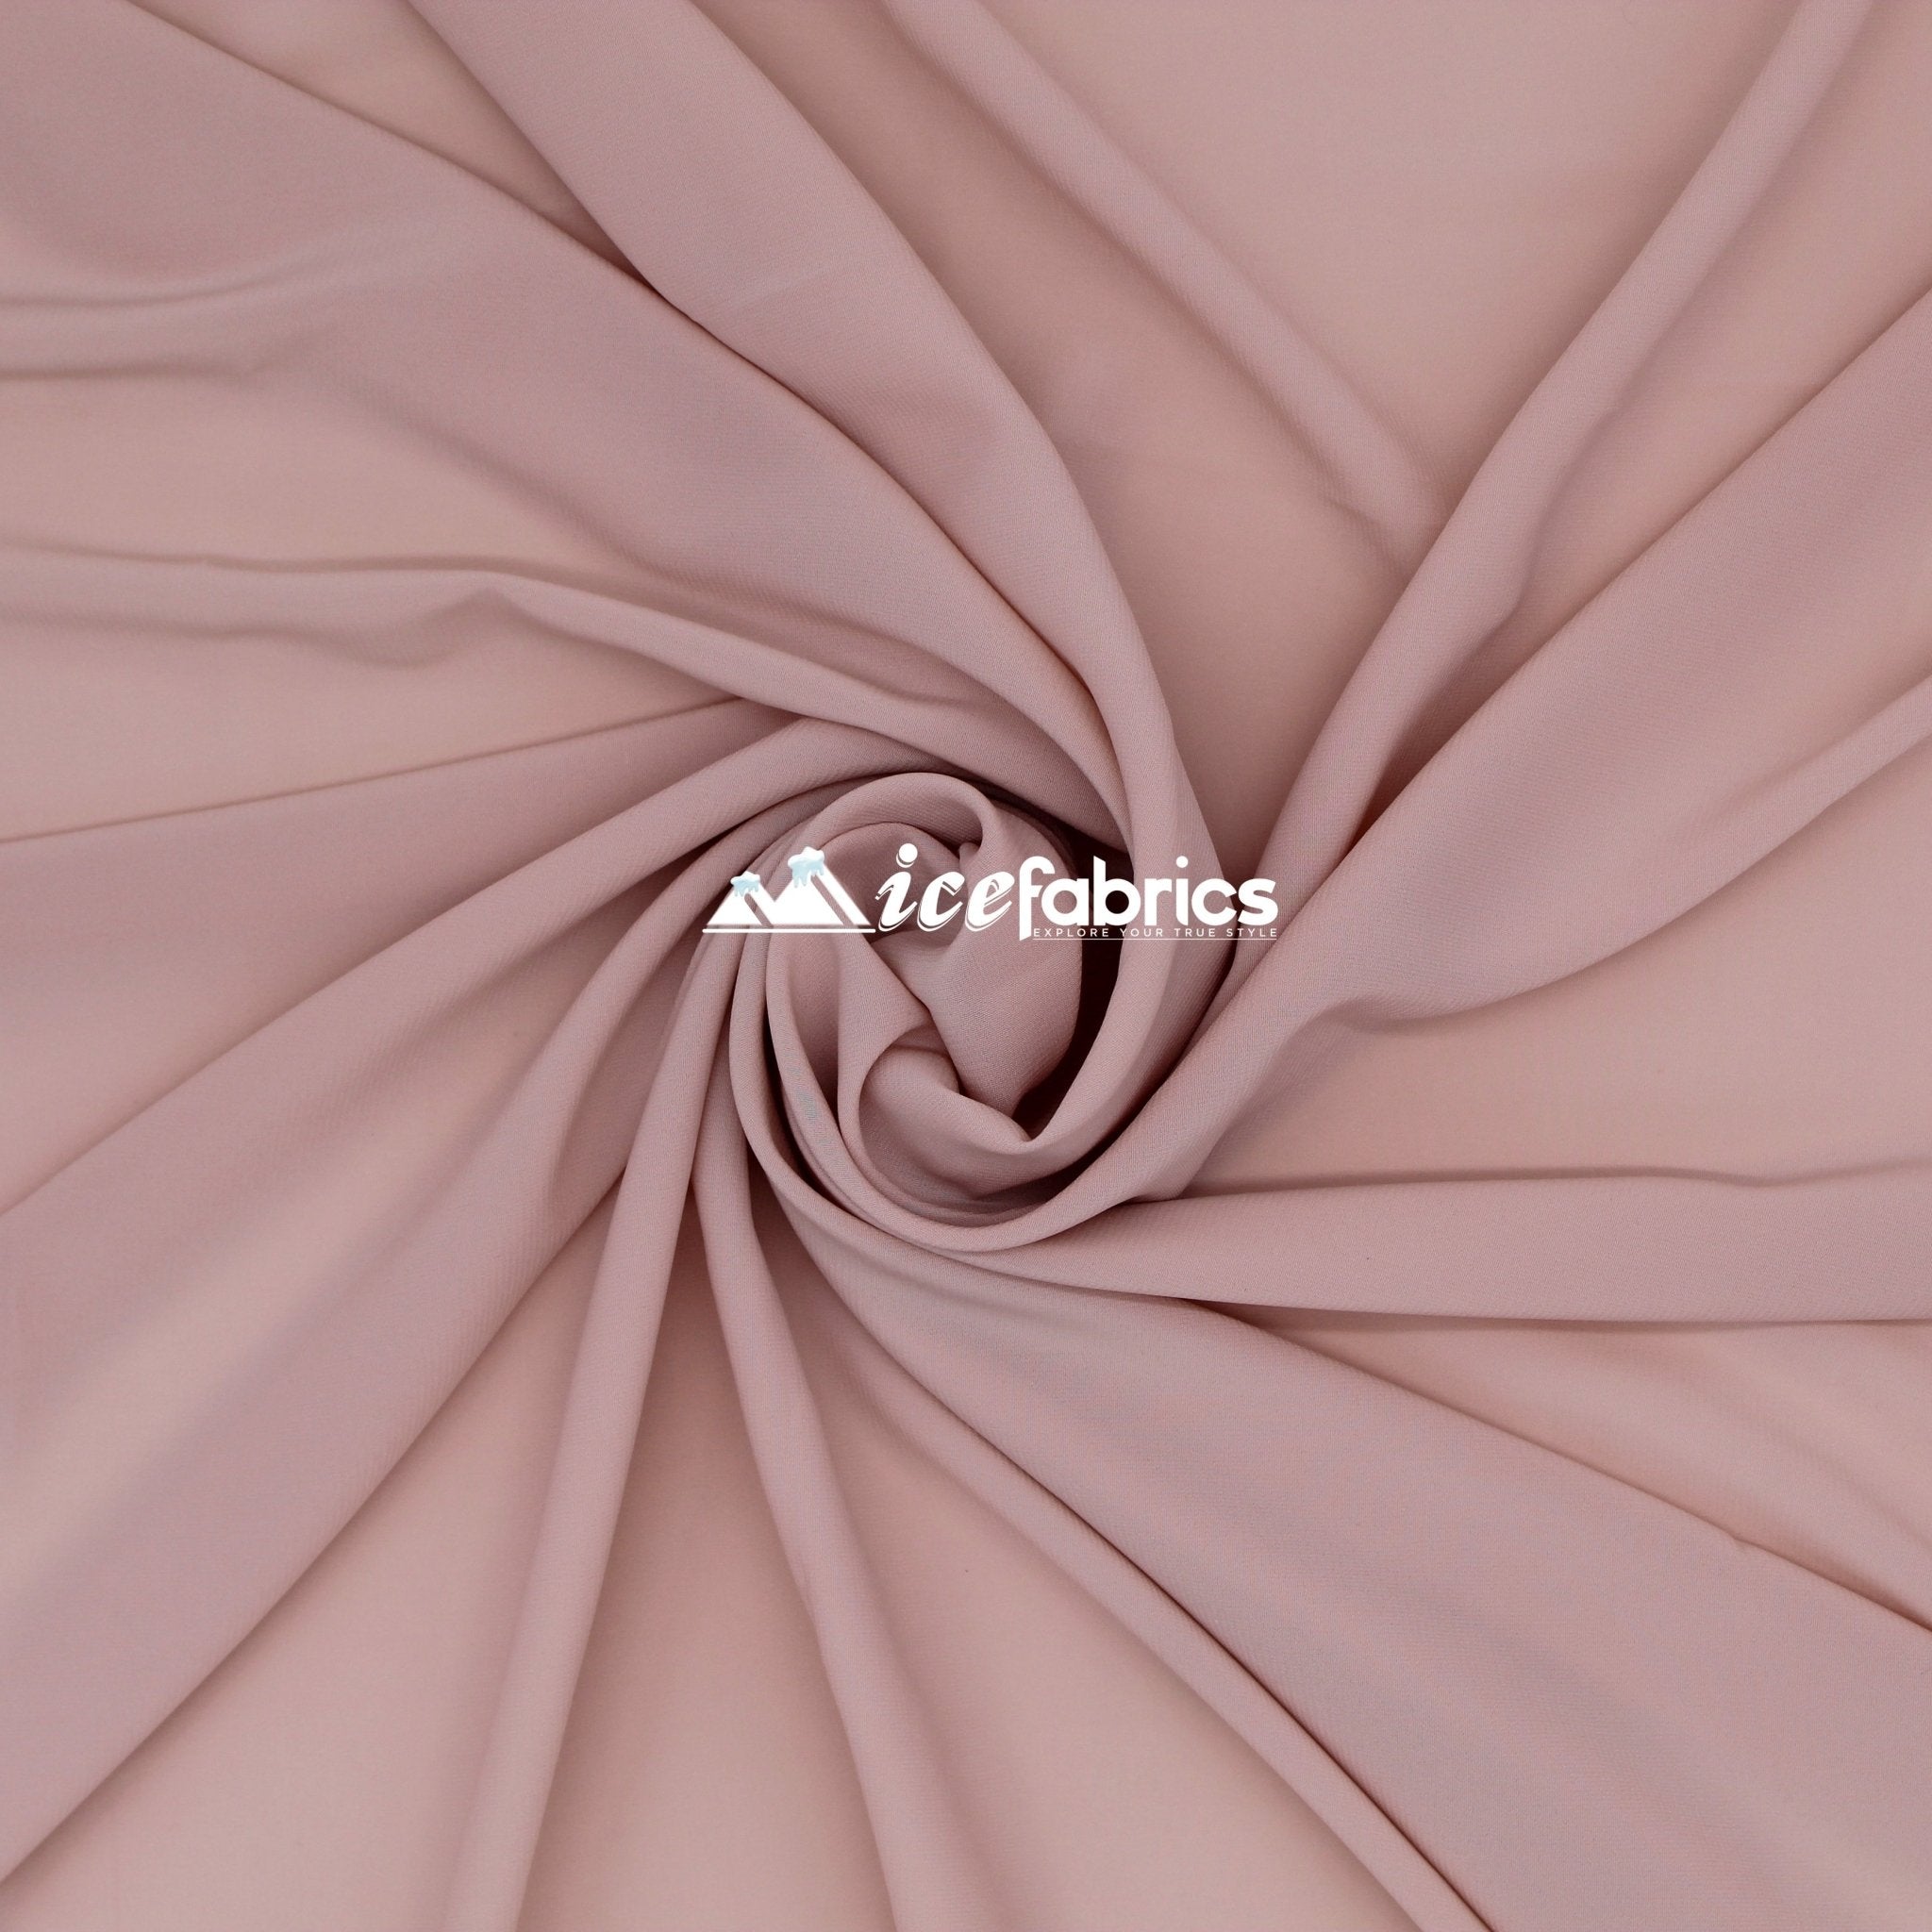 Silk Fabric Stretch Chiffon Fabric/ Spandex Fabric/ Dusty RoseChiffon FabricICE FABRICSICE FABRICSDusty RosePer YardSilk Fabric Stretch Chiffon Fabric/ Spandex Fabric/ Dusty Rose ICE FABRICS